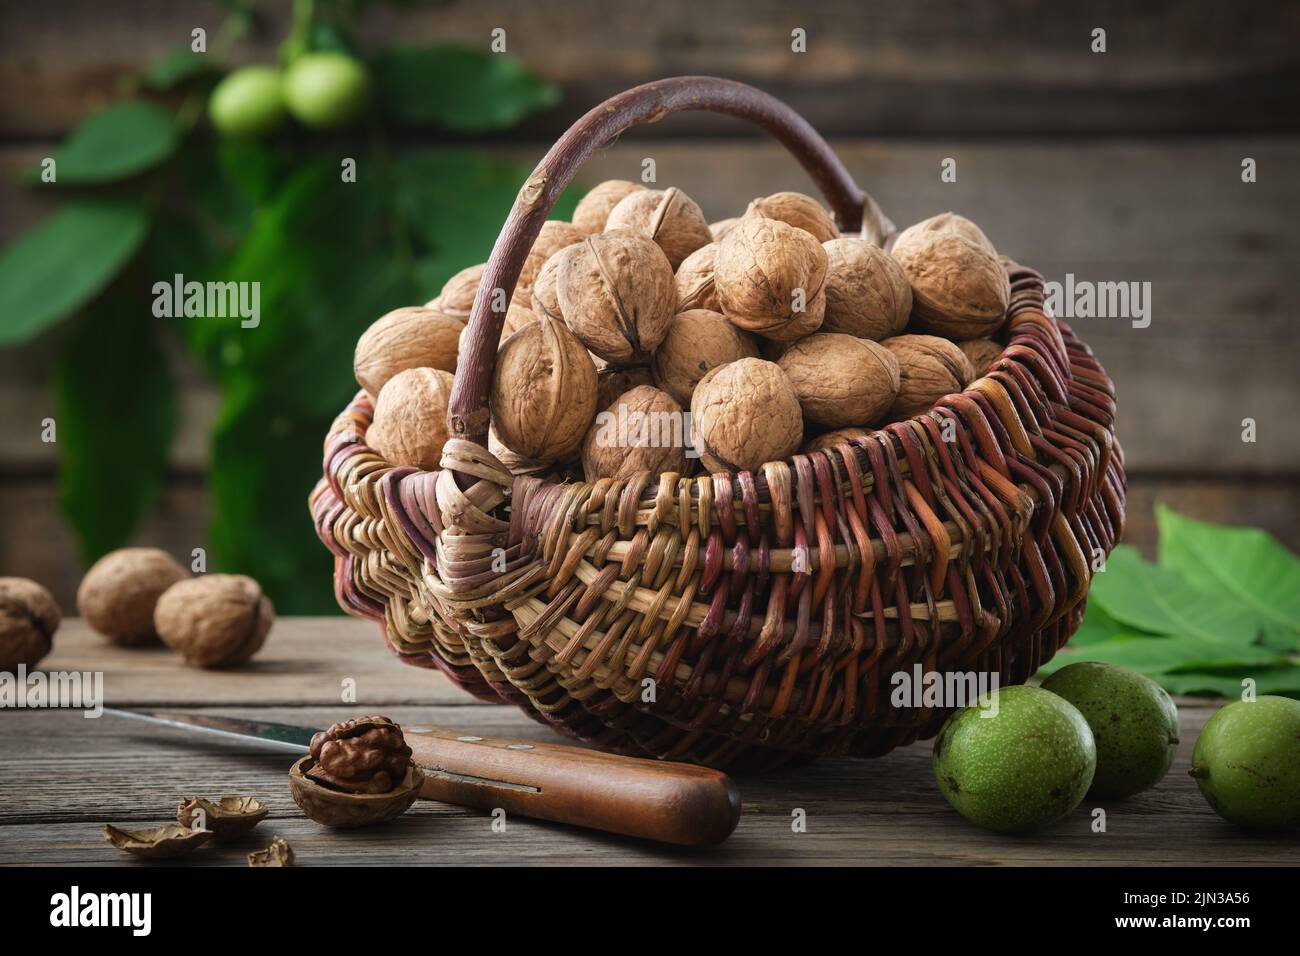 Cesta de mimbre llena de nueces. Nueces verdes y maduras, cuchillo sobre mesa de madera. Foto de stock